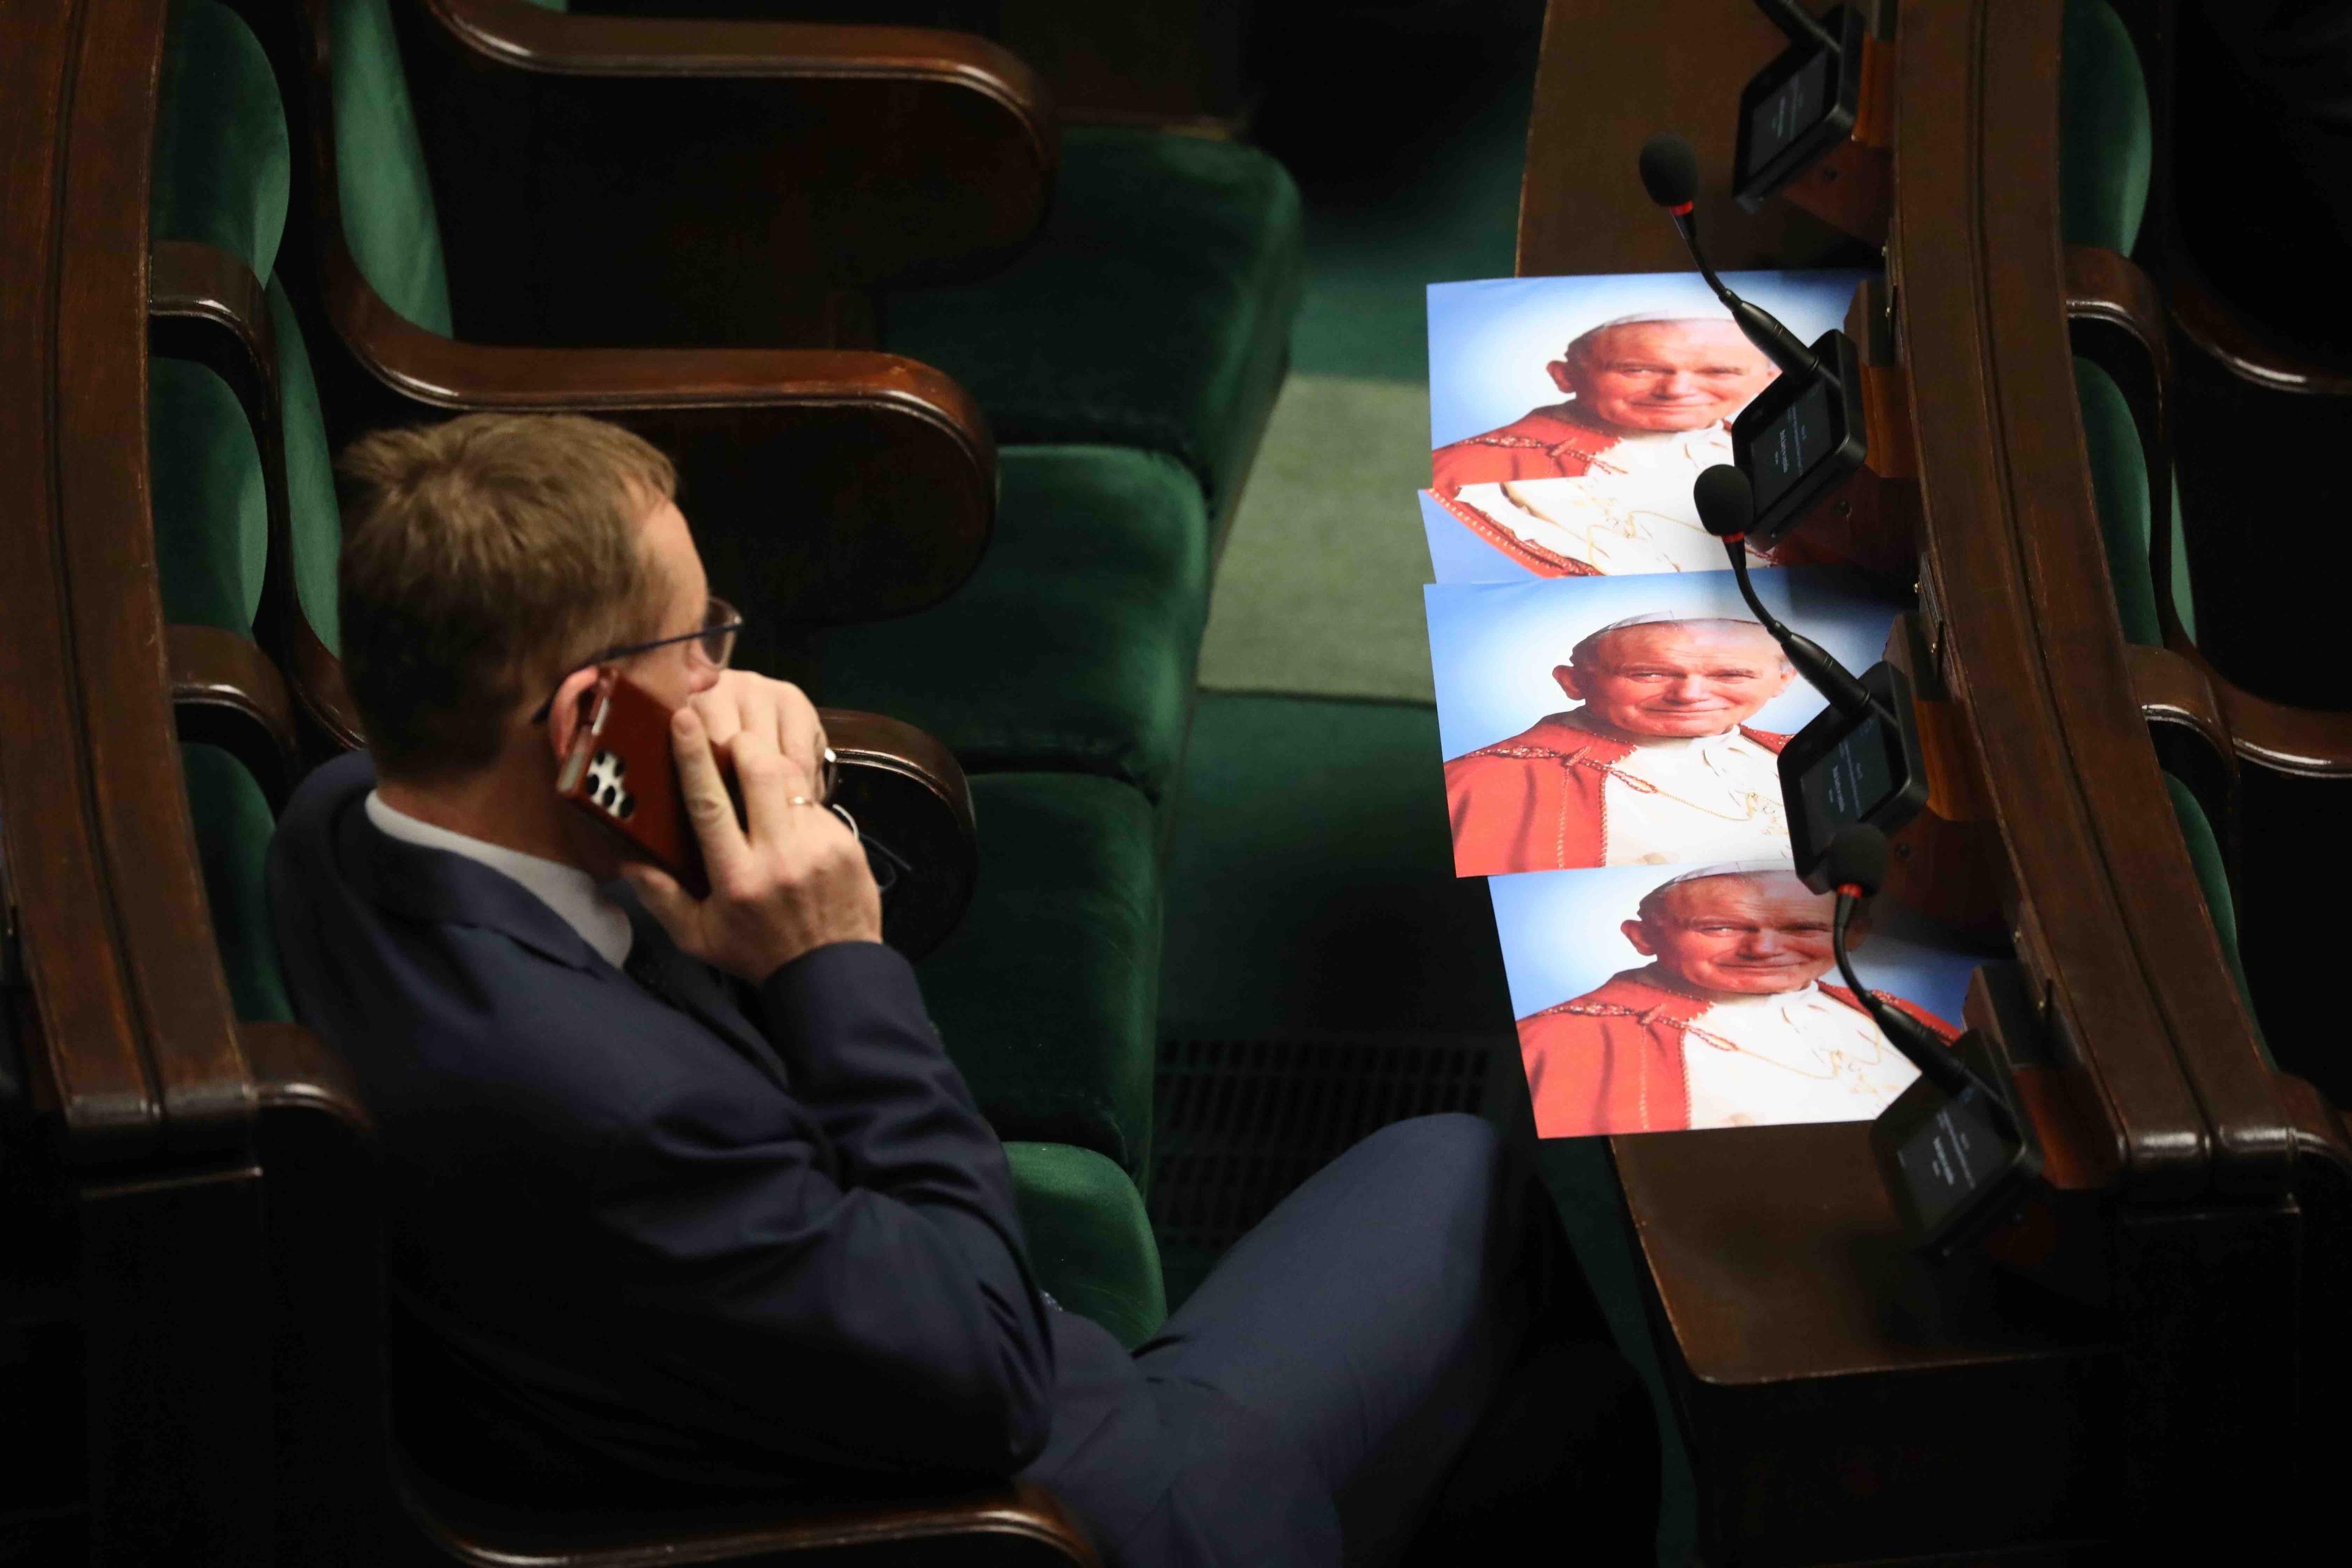 Portrety Jana Pawła II leżą w miejscach poselskich na sali Sejmu. Obok poseł rozmawia przez telefon.